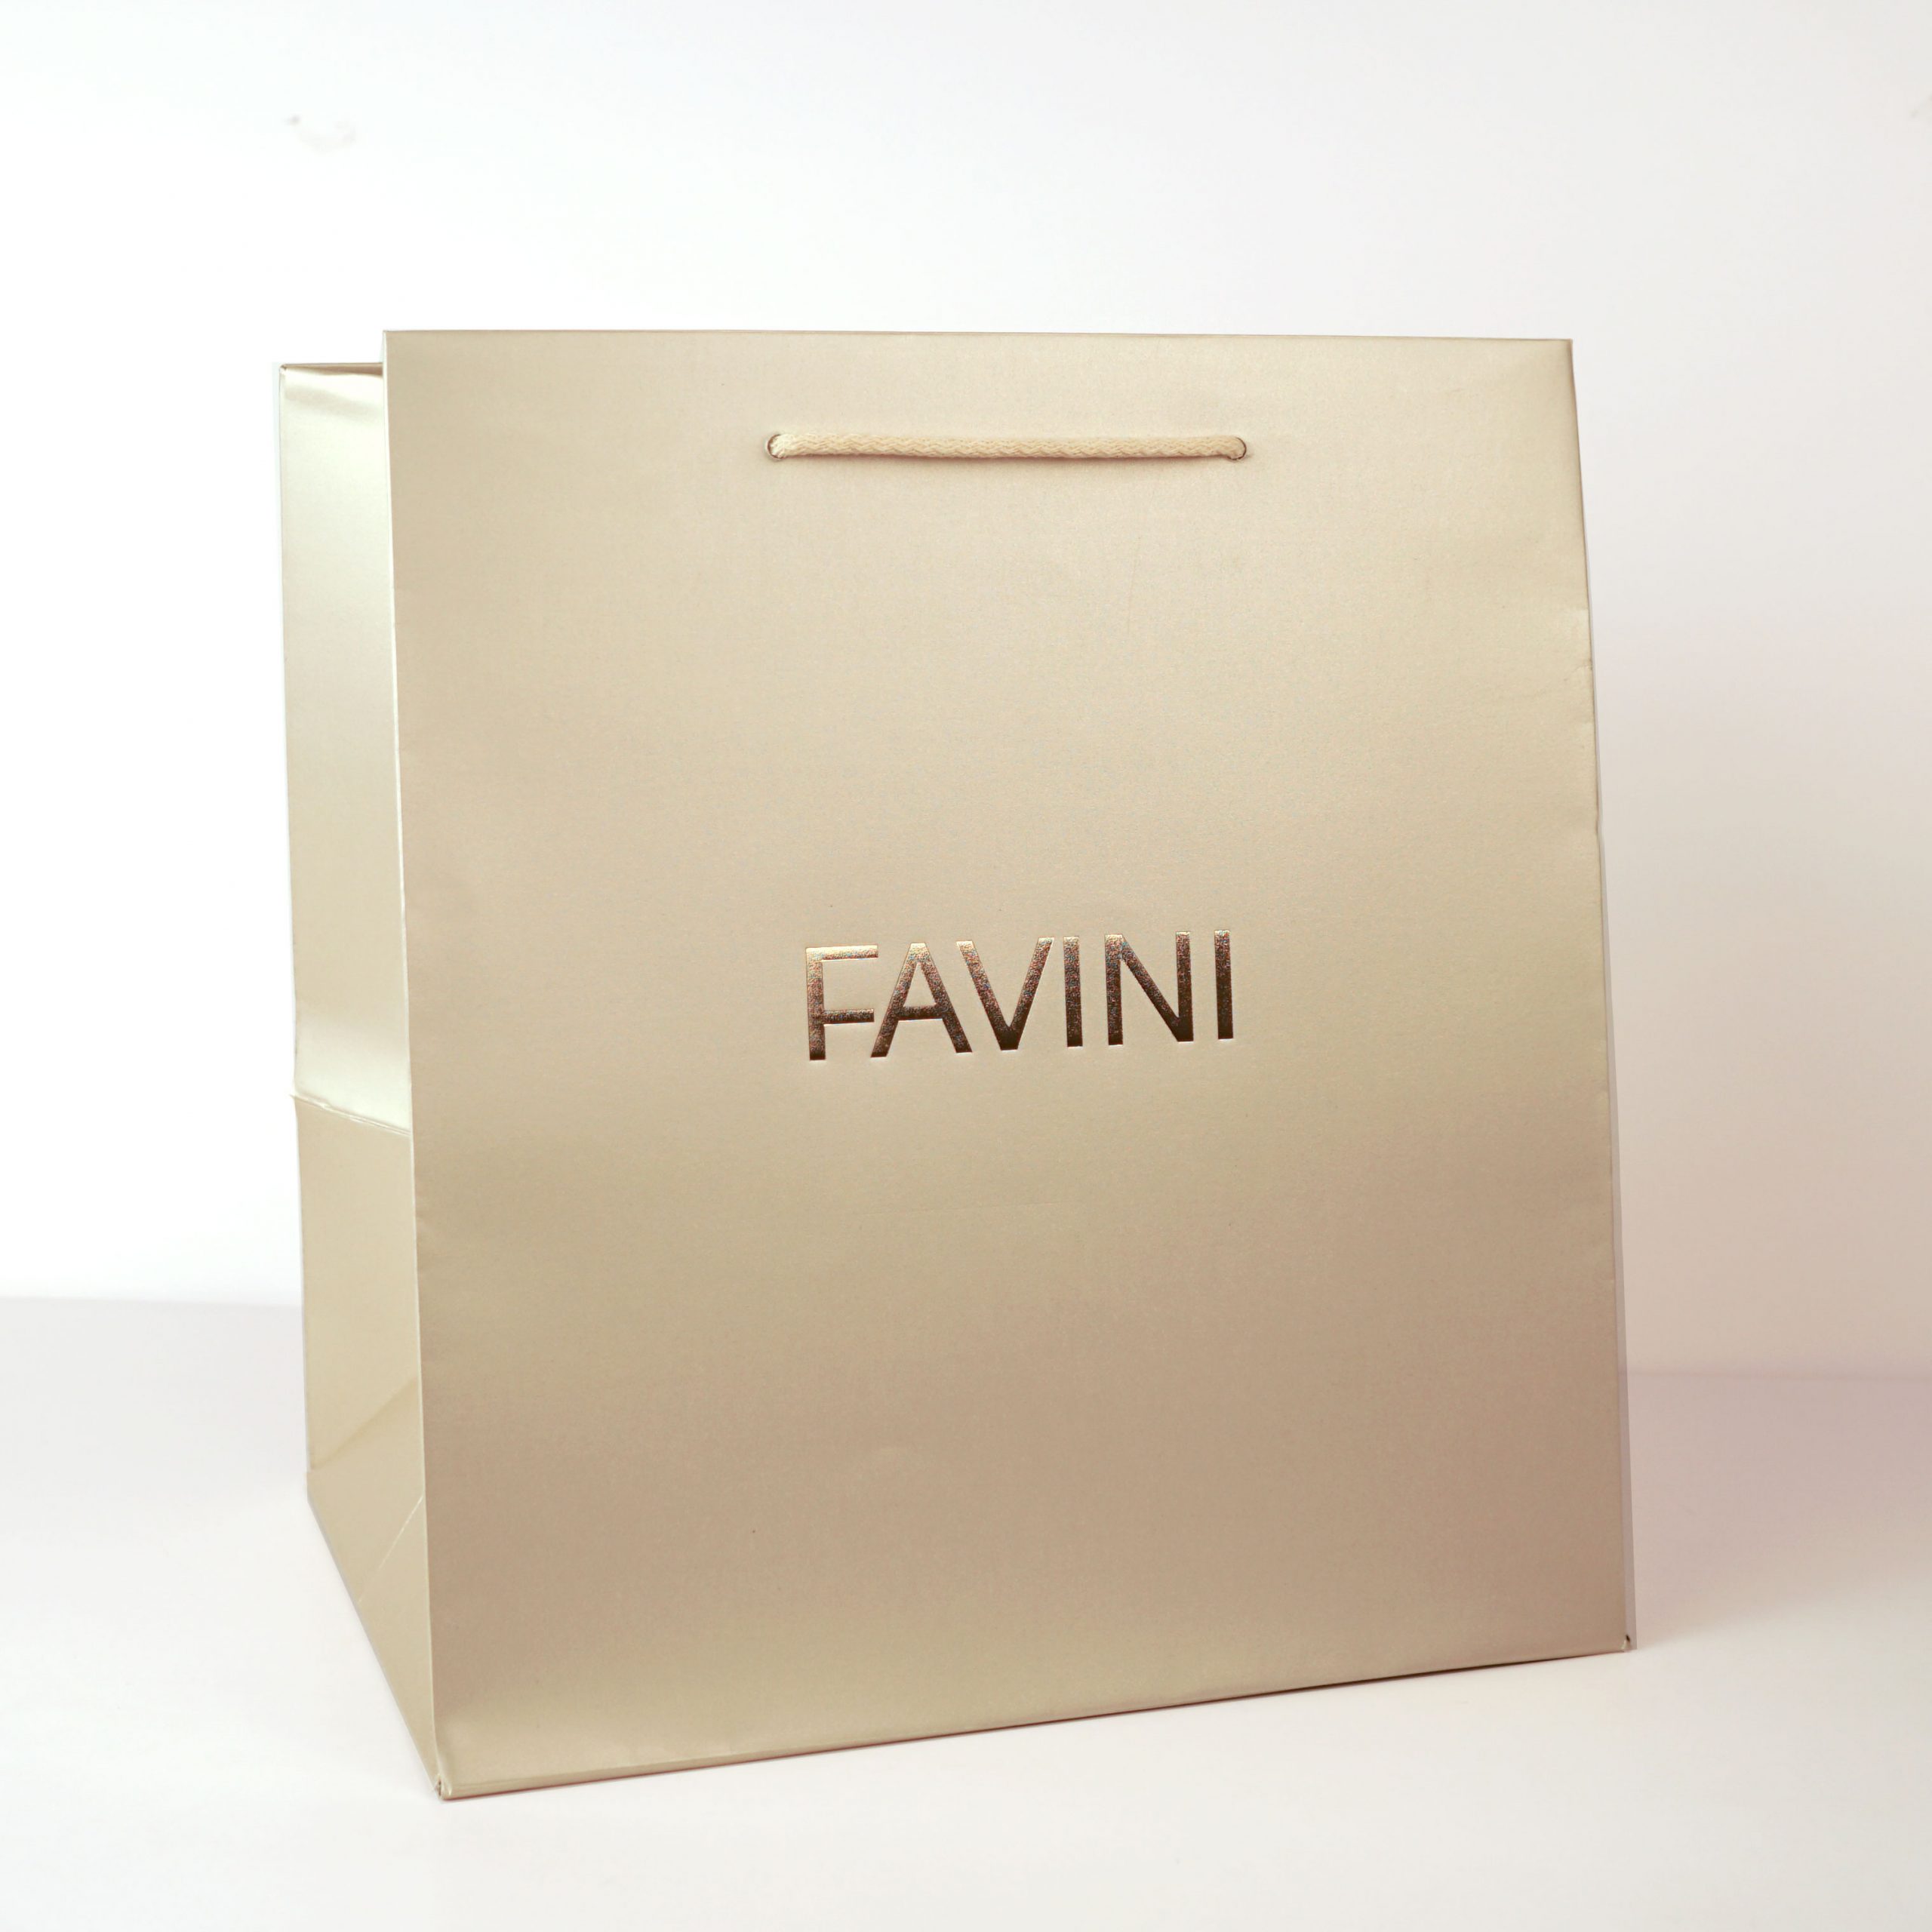 1 | Favini | Shopping bag | Paper Bag